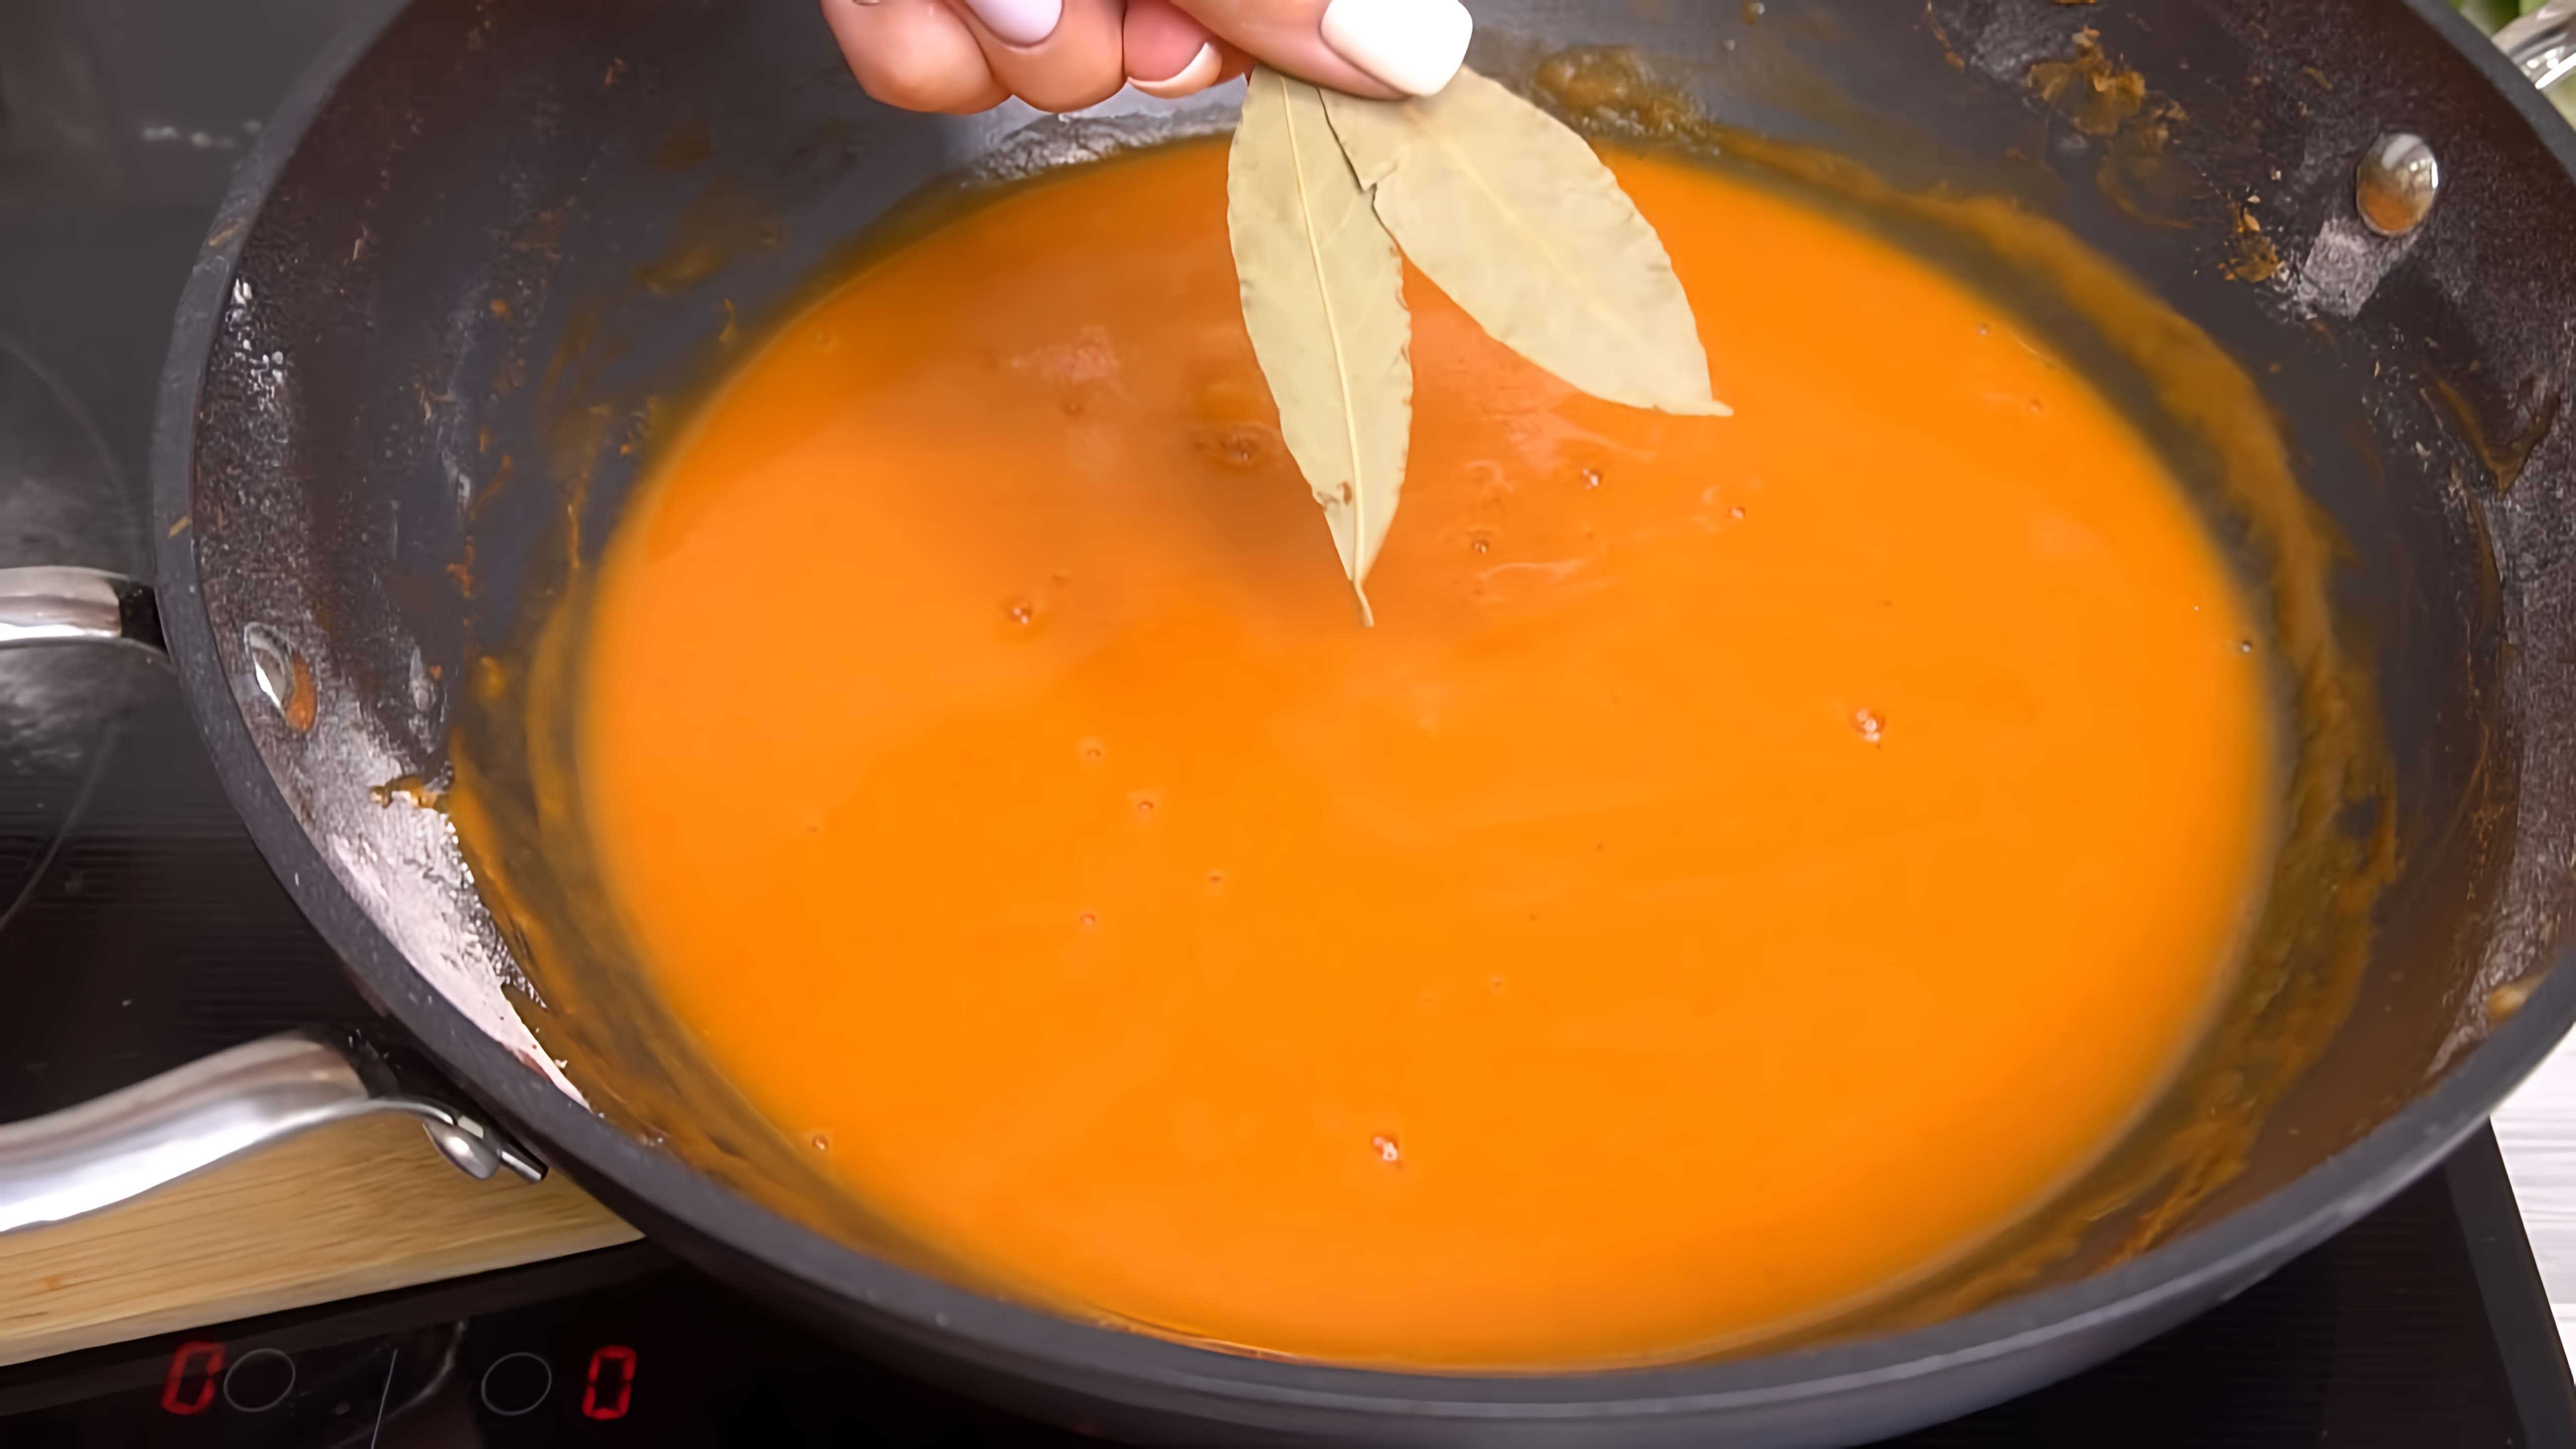 В этом видео демонстрируется рецепт приготовления идеальной подливы за 3 минуты к котлетам, сосискам и не только